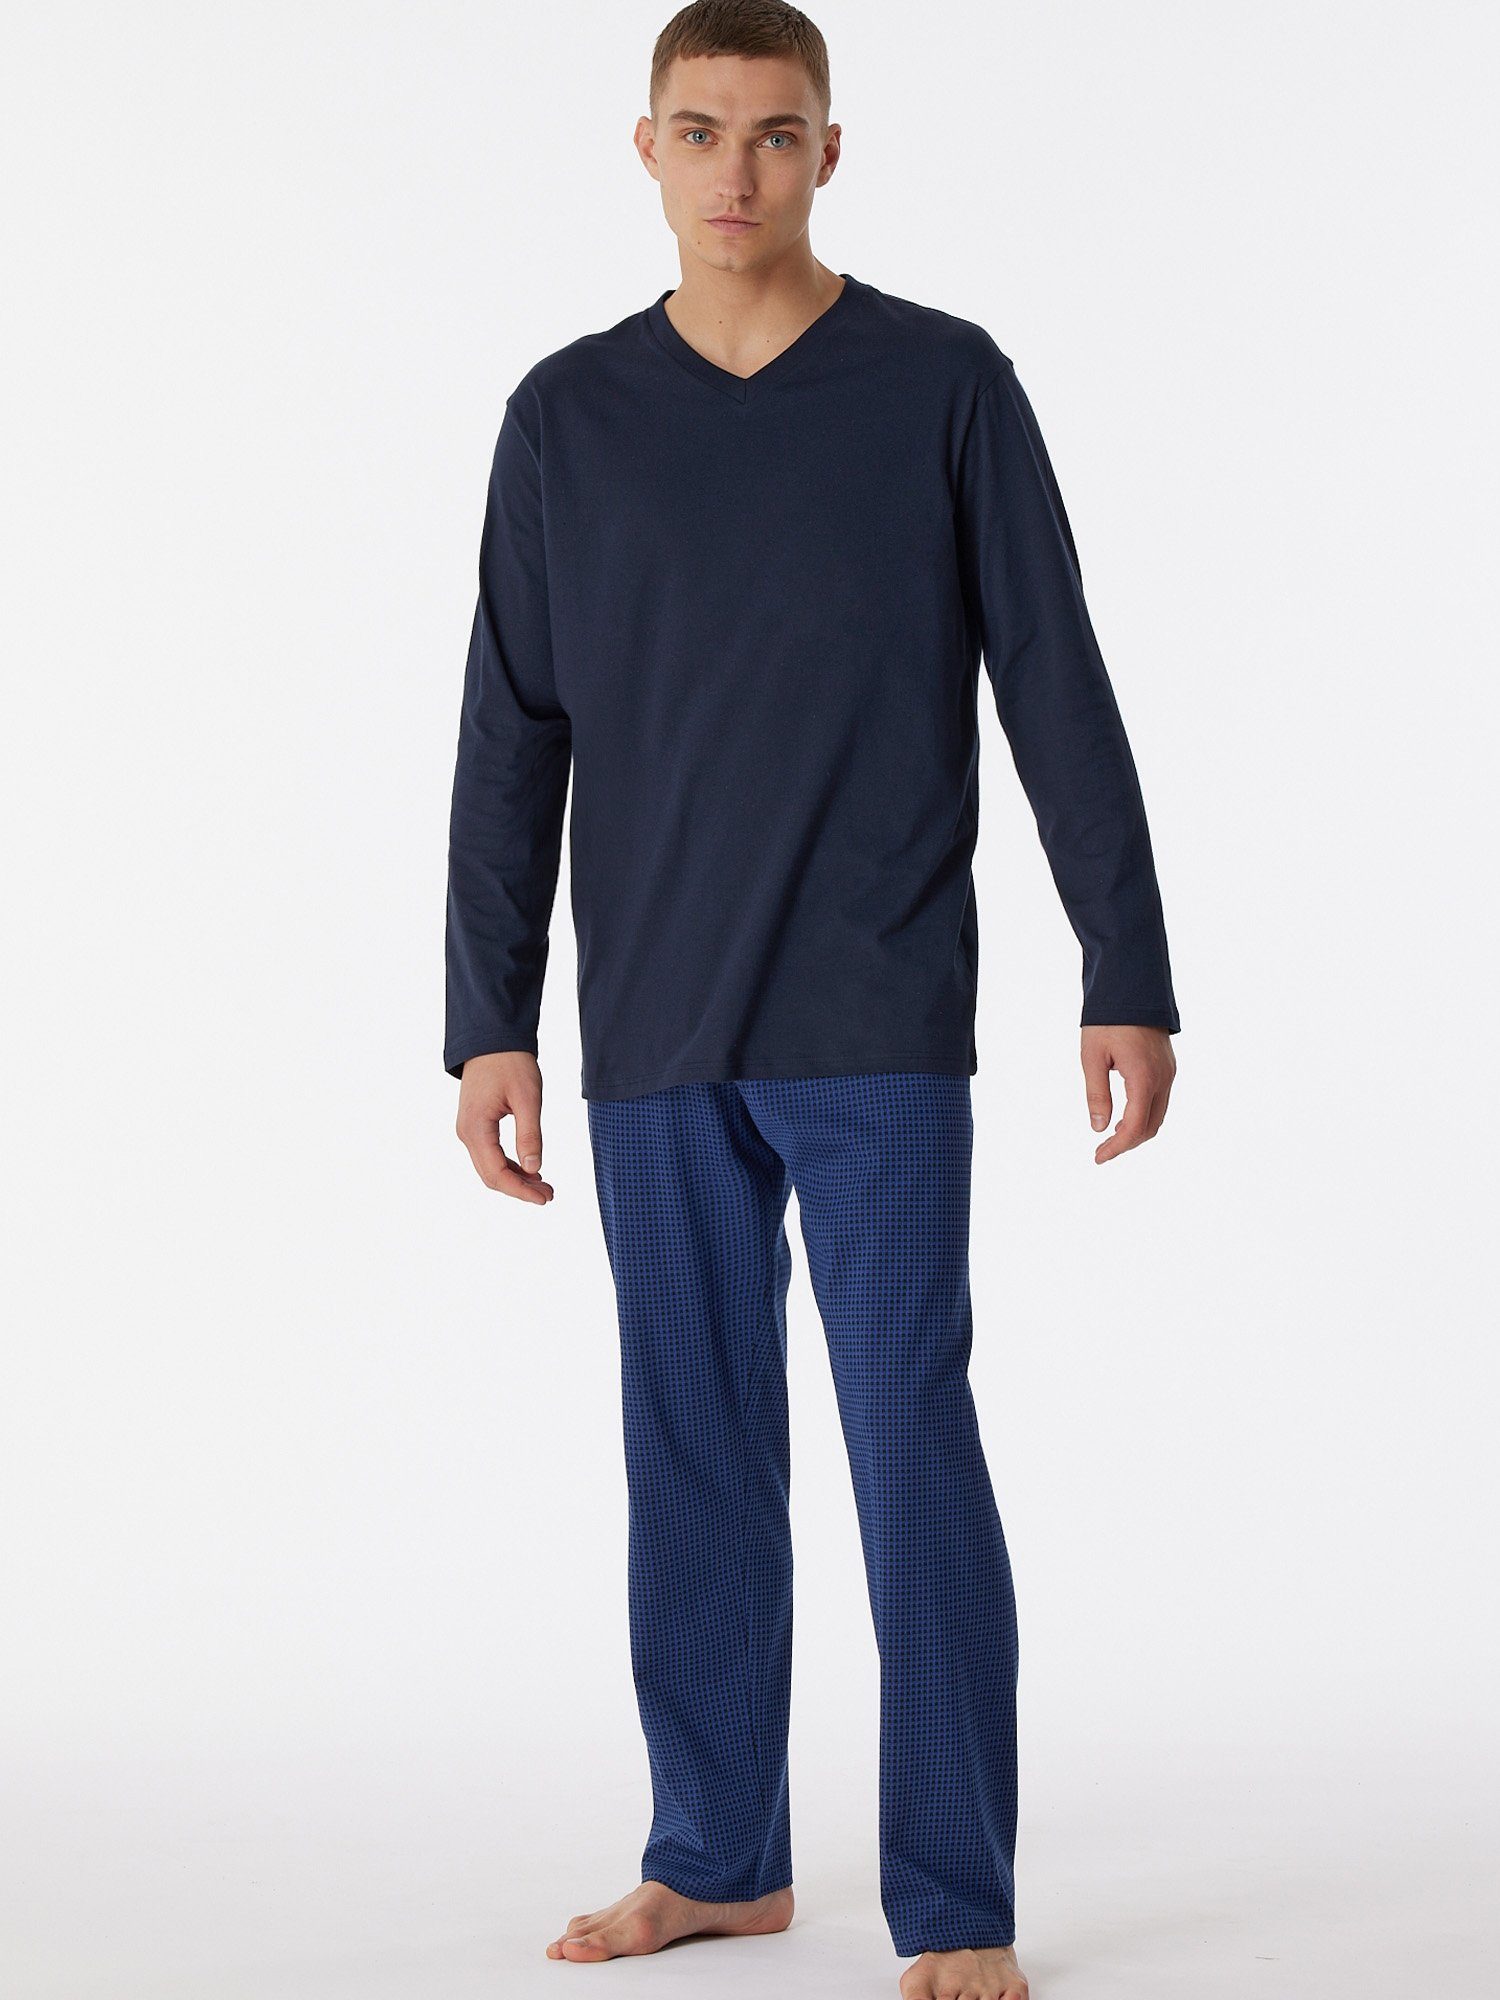 Schiesser Pyjama Comfort Essentials nachtblau schlafmode pyjama schlafanzug